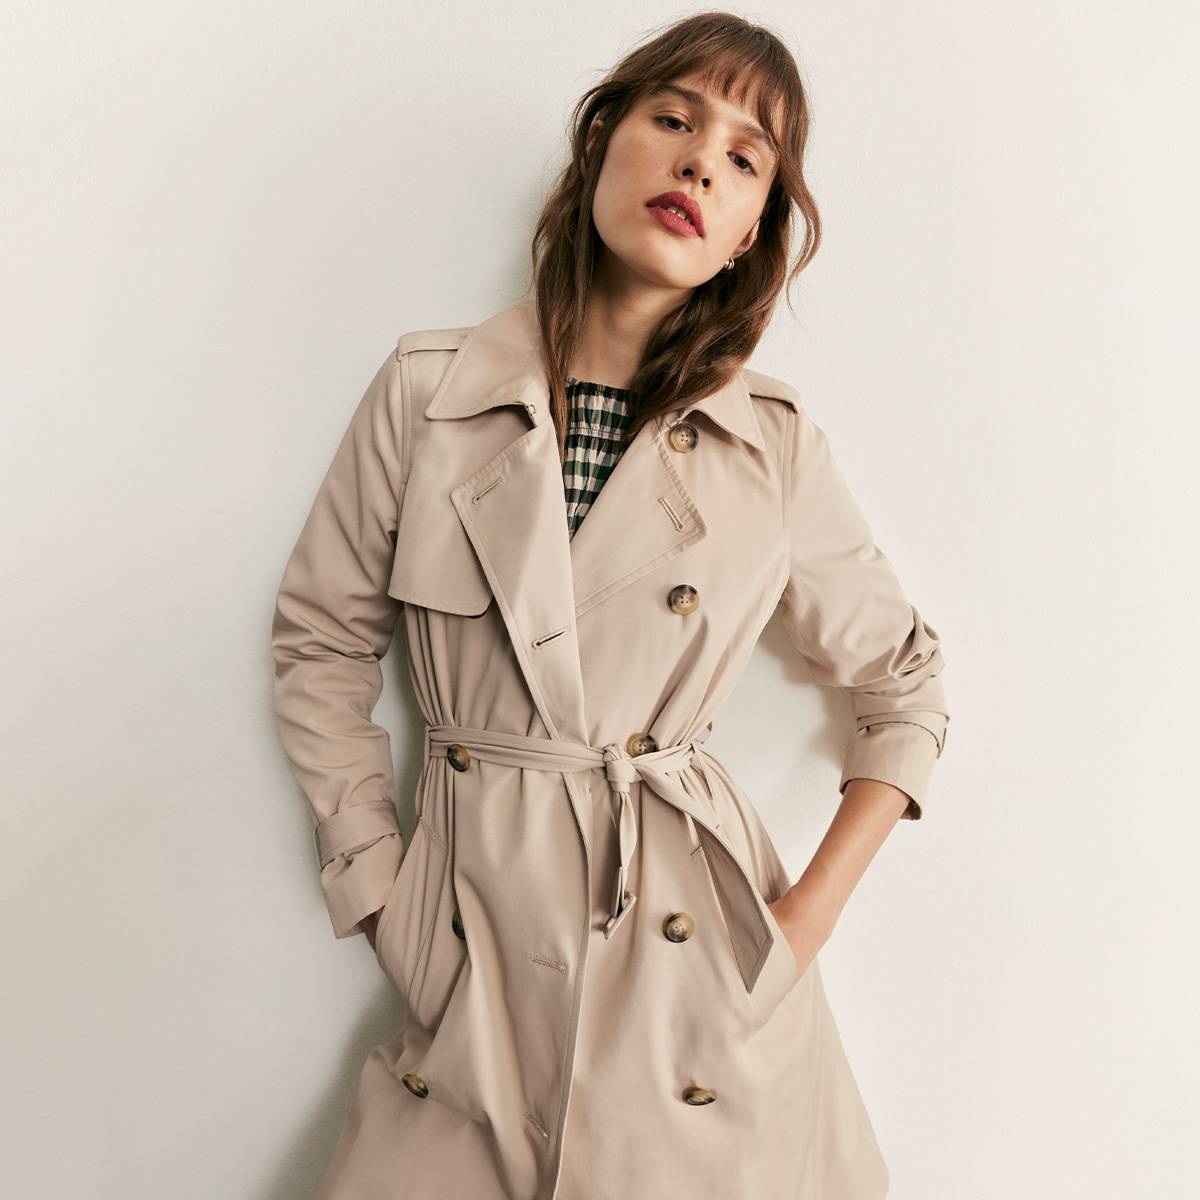 Woman wearing beige trench coat 